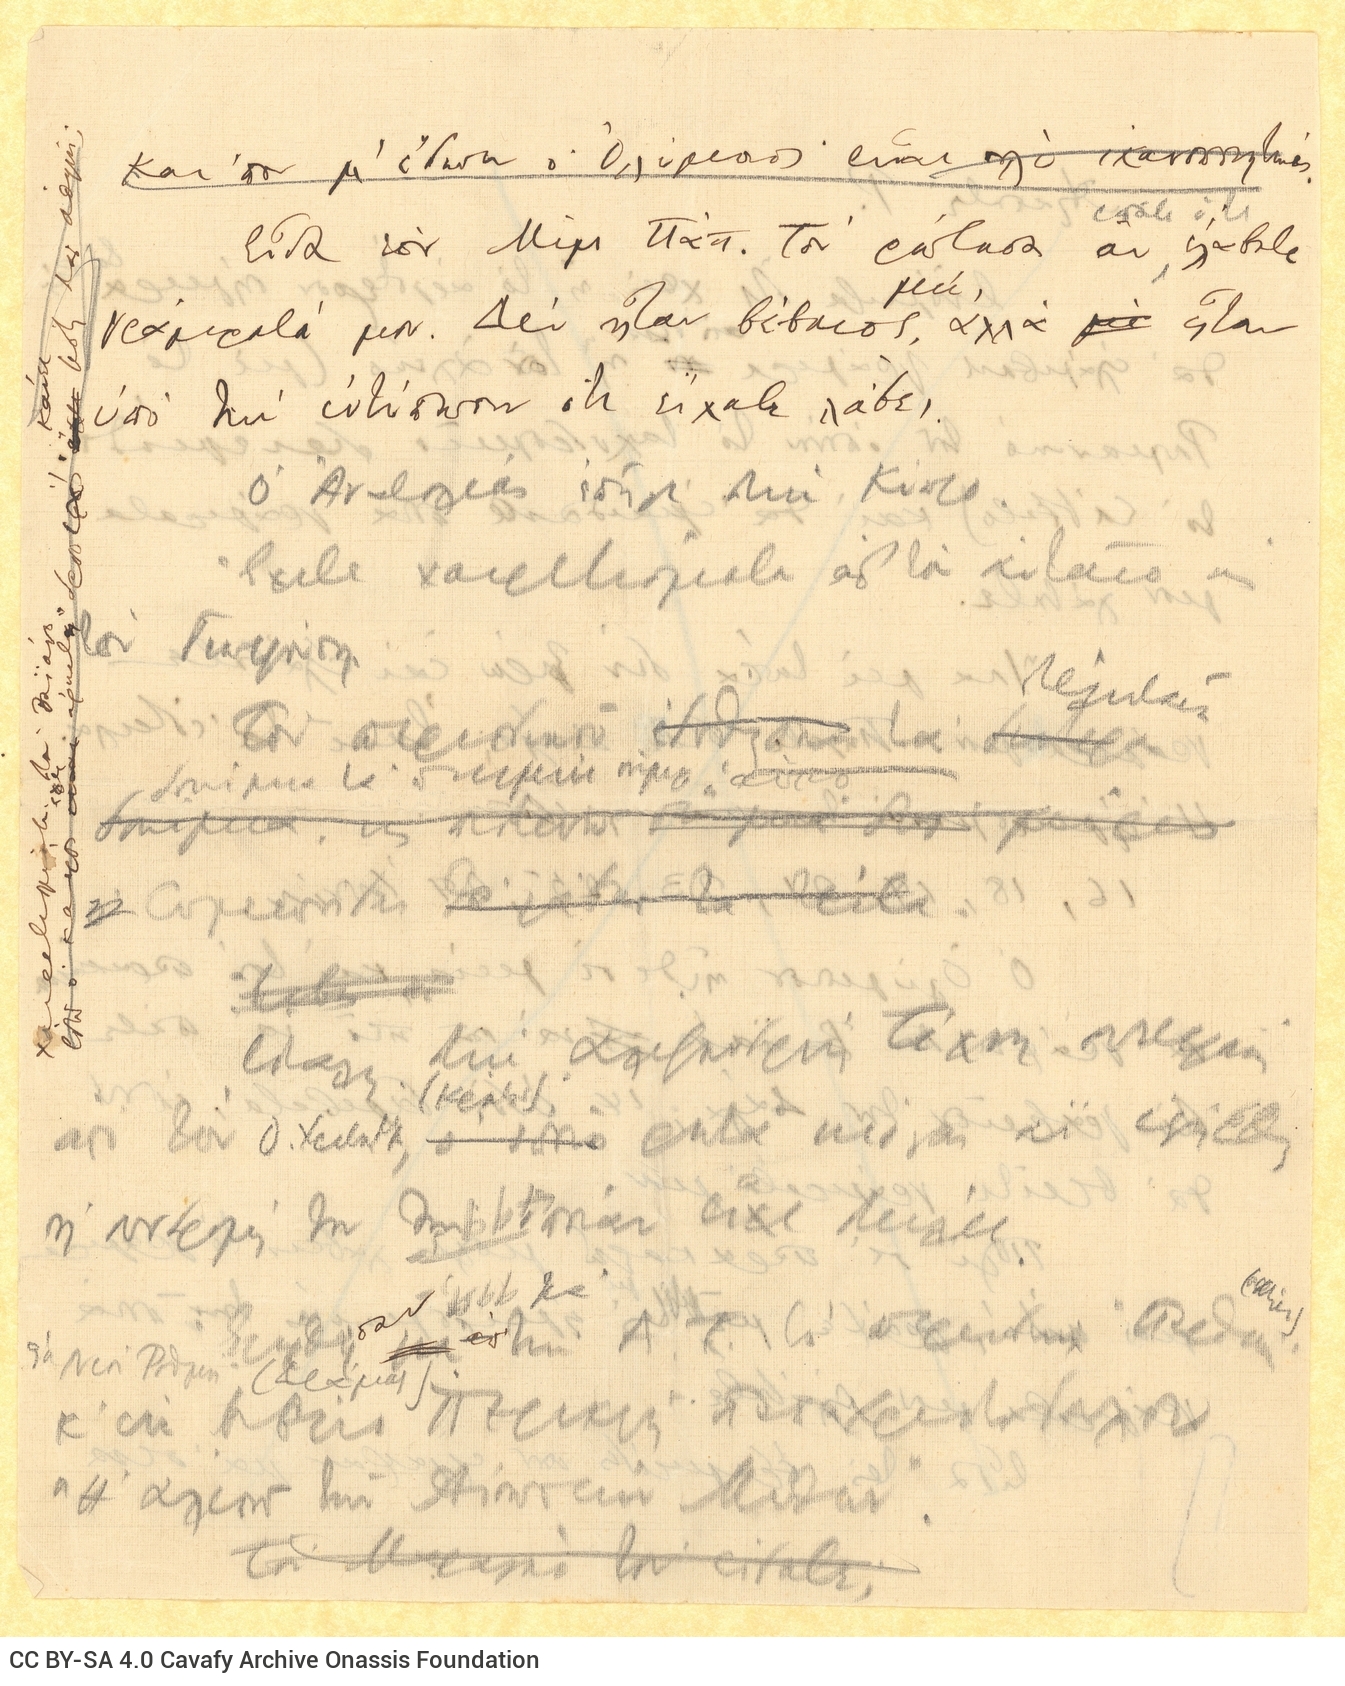 Χειρόγραφο σχέδιο επιστολής του Καβάφη προς τη Ρ[ίκα Σεγκοπούλου] σε